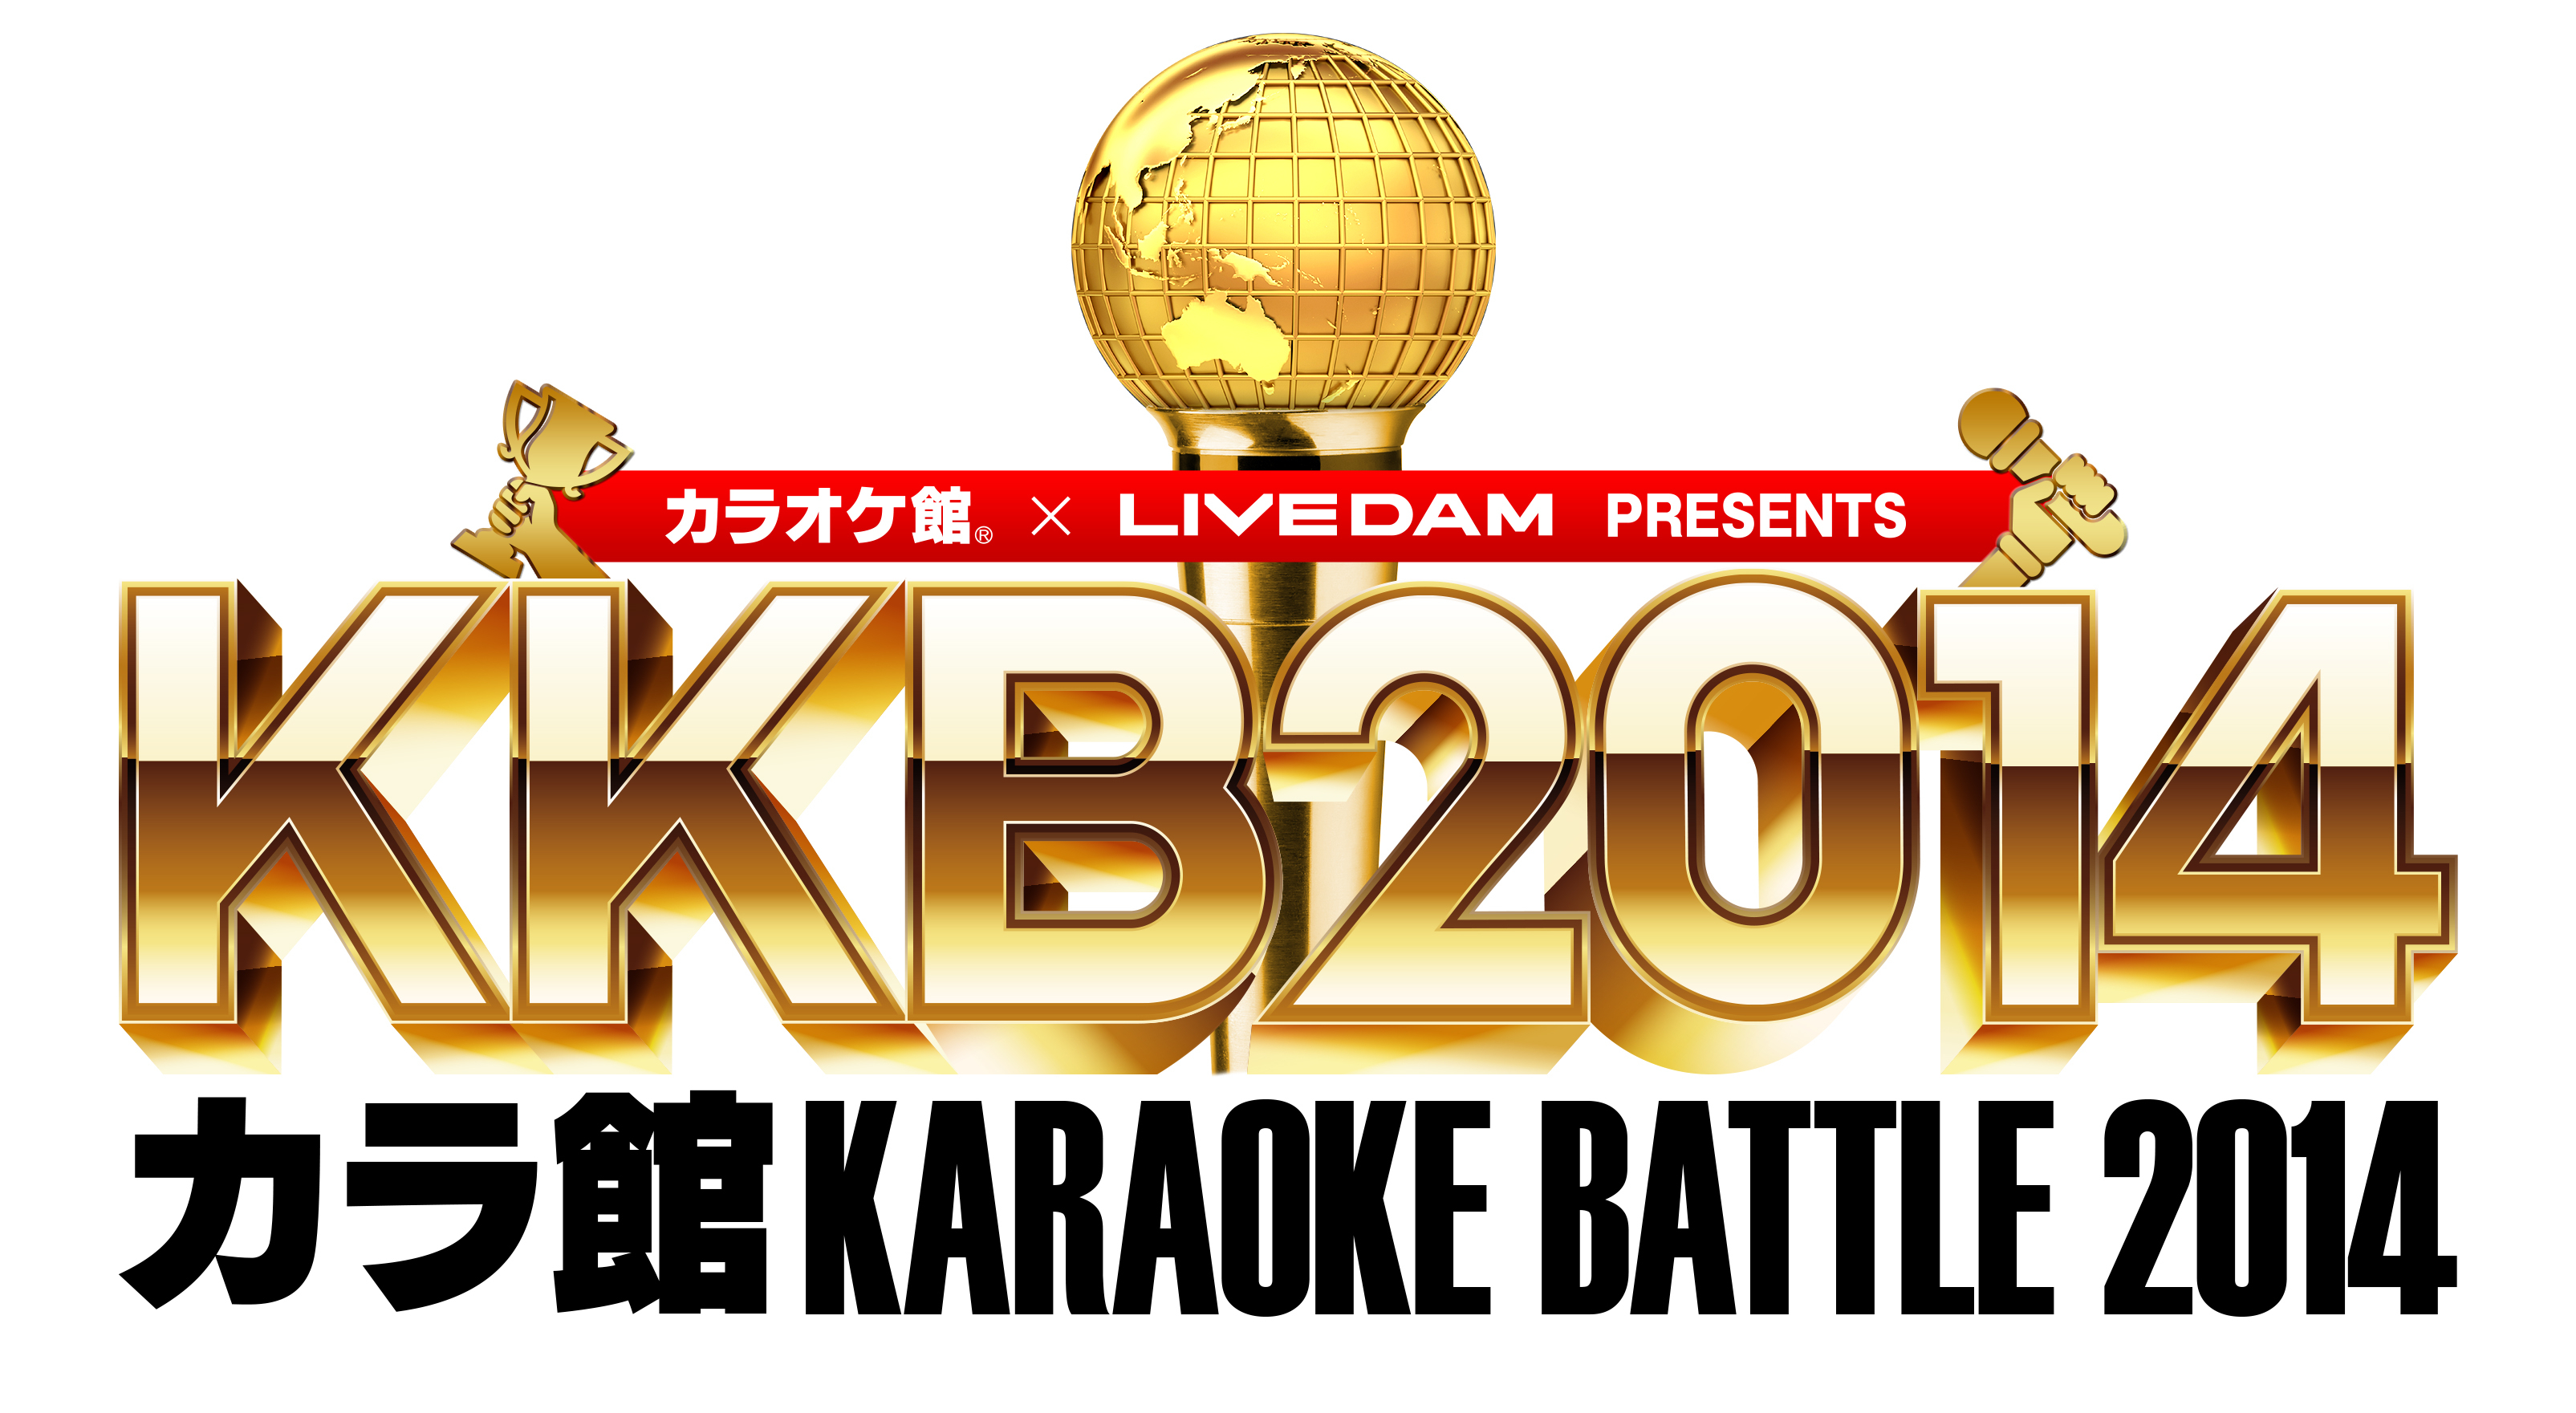 ついにカラオケ館が カラオケ大会の常識を覆す 優勝賞金1 000万円 史上最大級のカラオケ大会 Kkb14カラ館karaoke Battle 14 開催決定 株式会社ビーアンドブィのプレスリリース